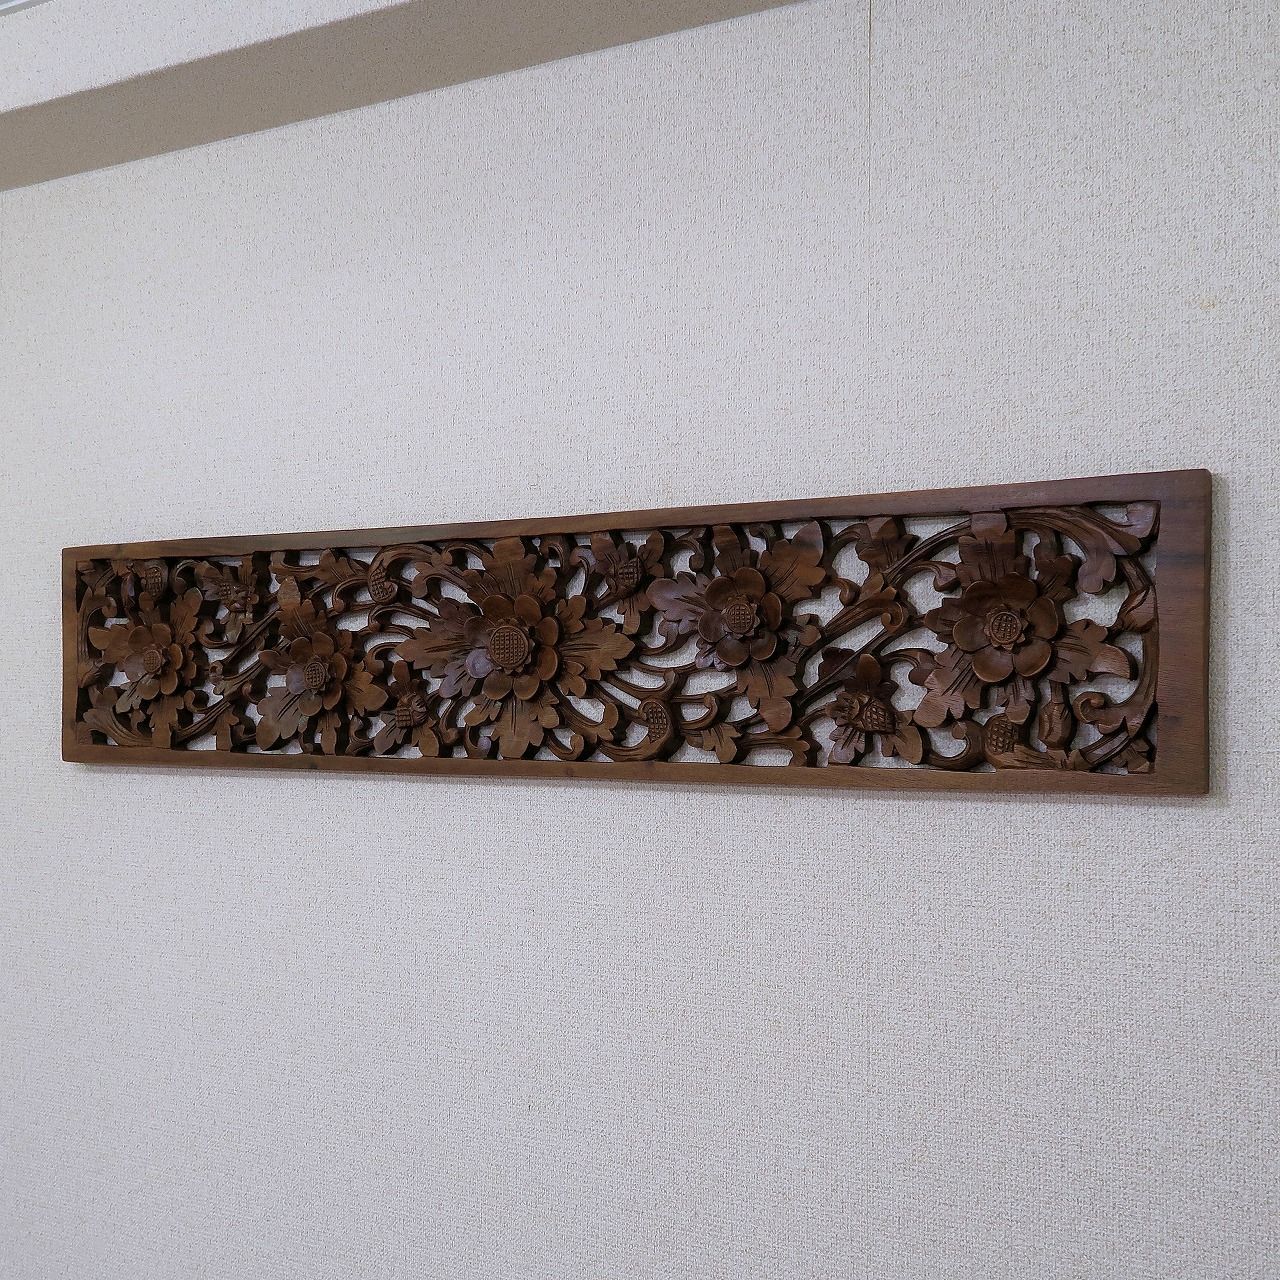 花の木彫りの壁掛けレリーフ 60X60 スワール無垢材 【壁掛け 